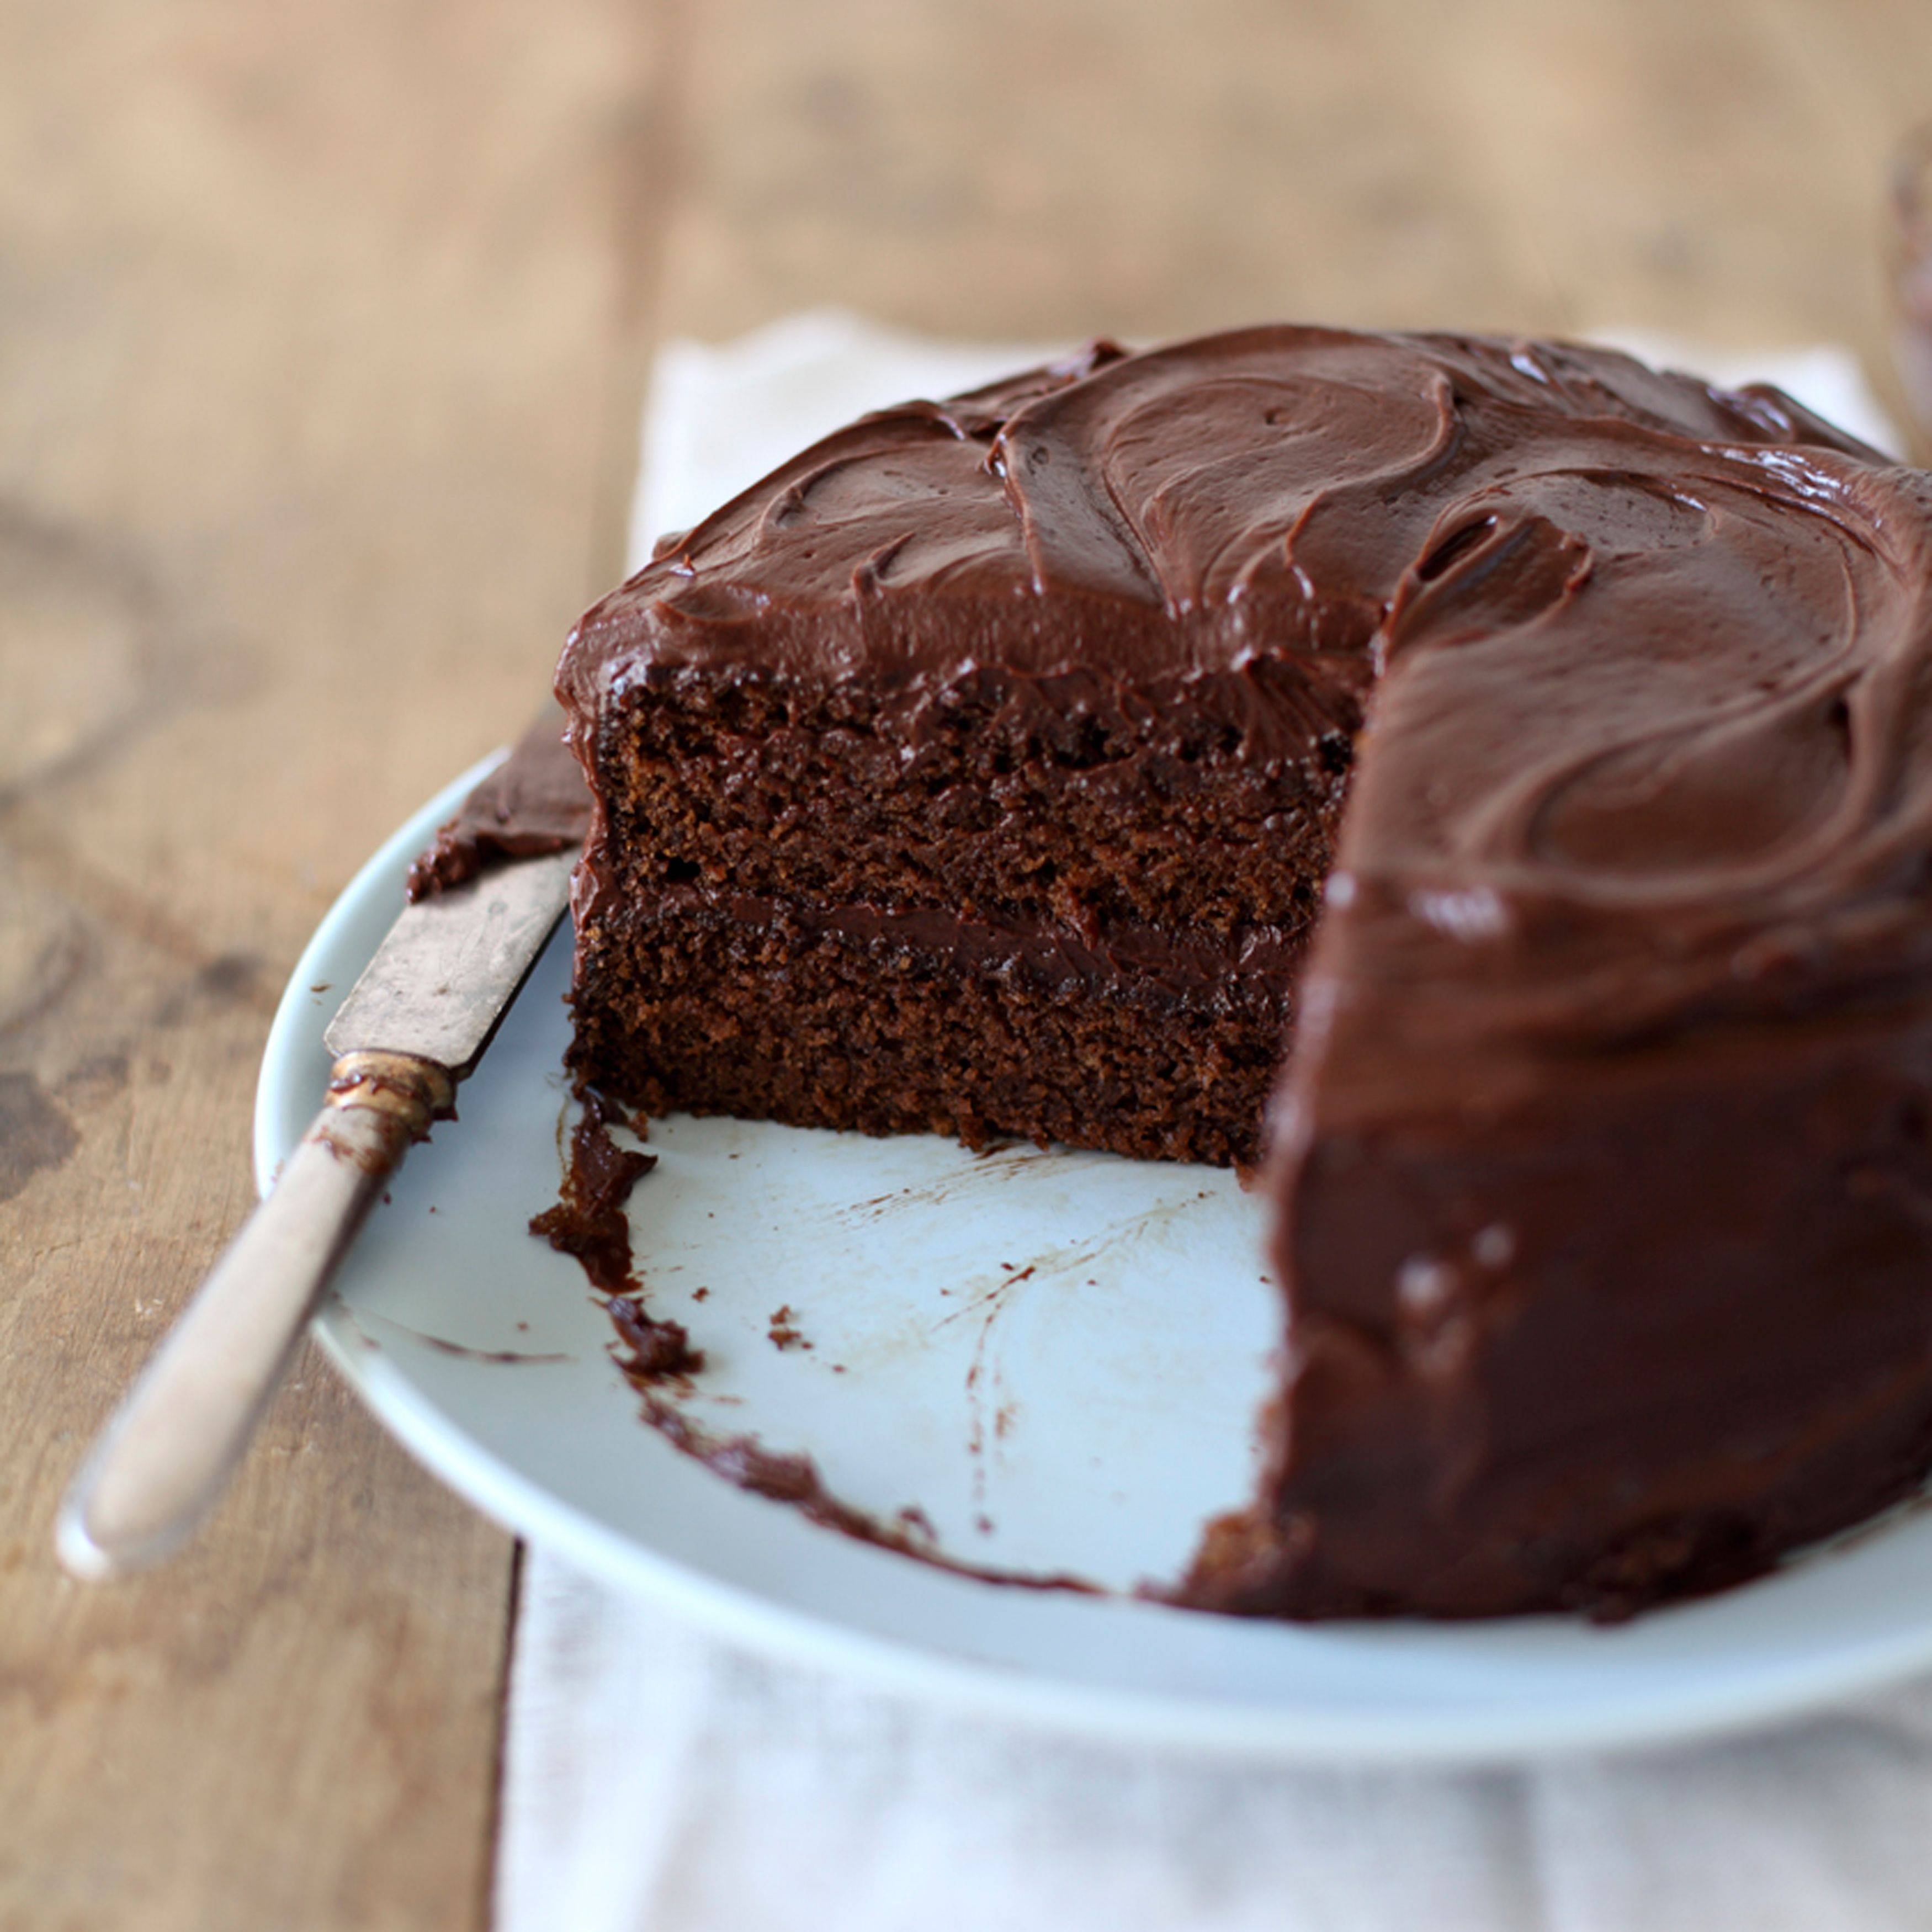 Испечь быстро вкусно торт. Бисквит Брауни для торта. Шоколадный торт Захер. Шоколадный бисквит Брауни. Торт Захер Питер Фрост.